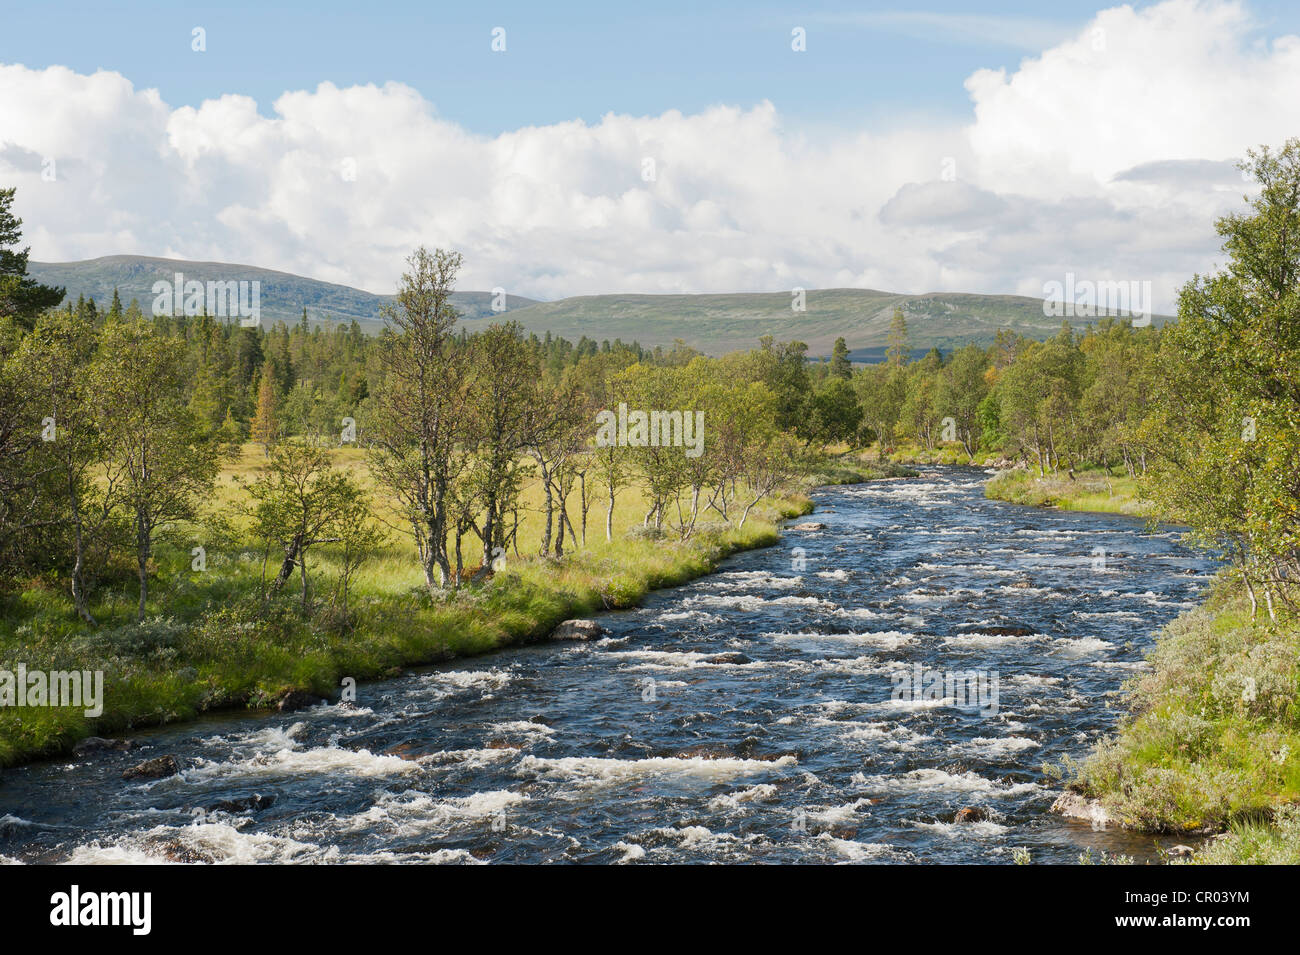 Désert, Groevlan Langfjaellet avec river Rapids, près de la réserve naturelle, Groevelsjoen province de Dalarna, Suède, Scandinavie Banque D'Images